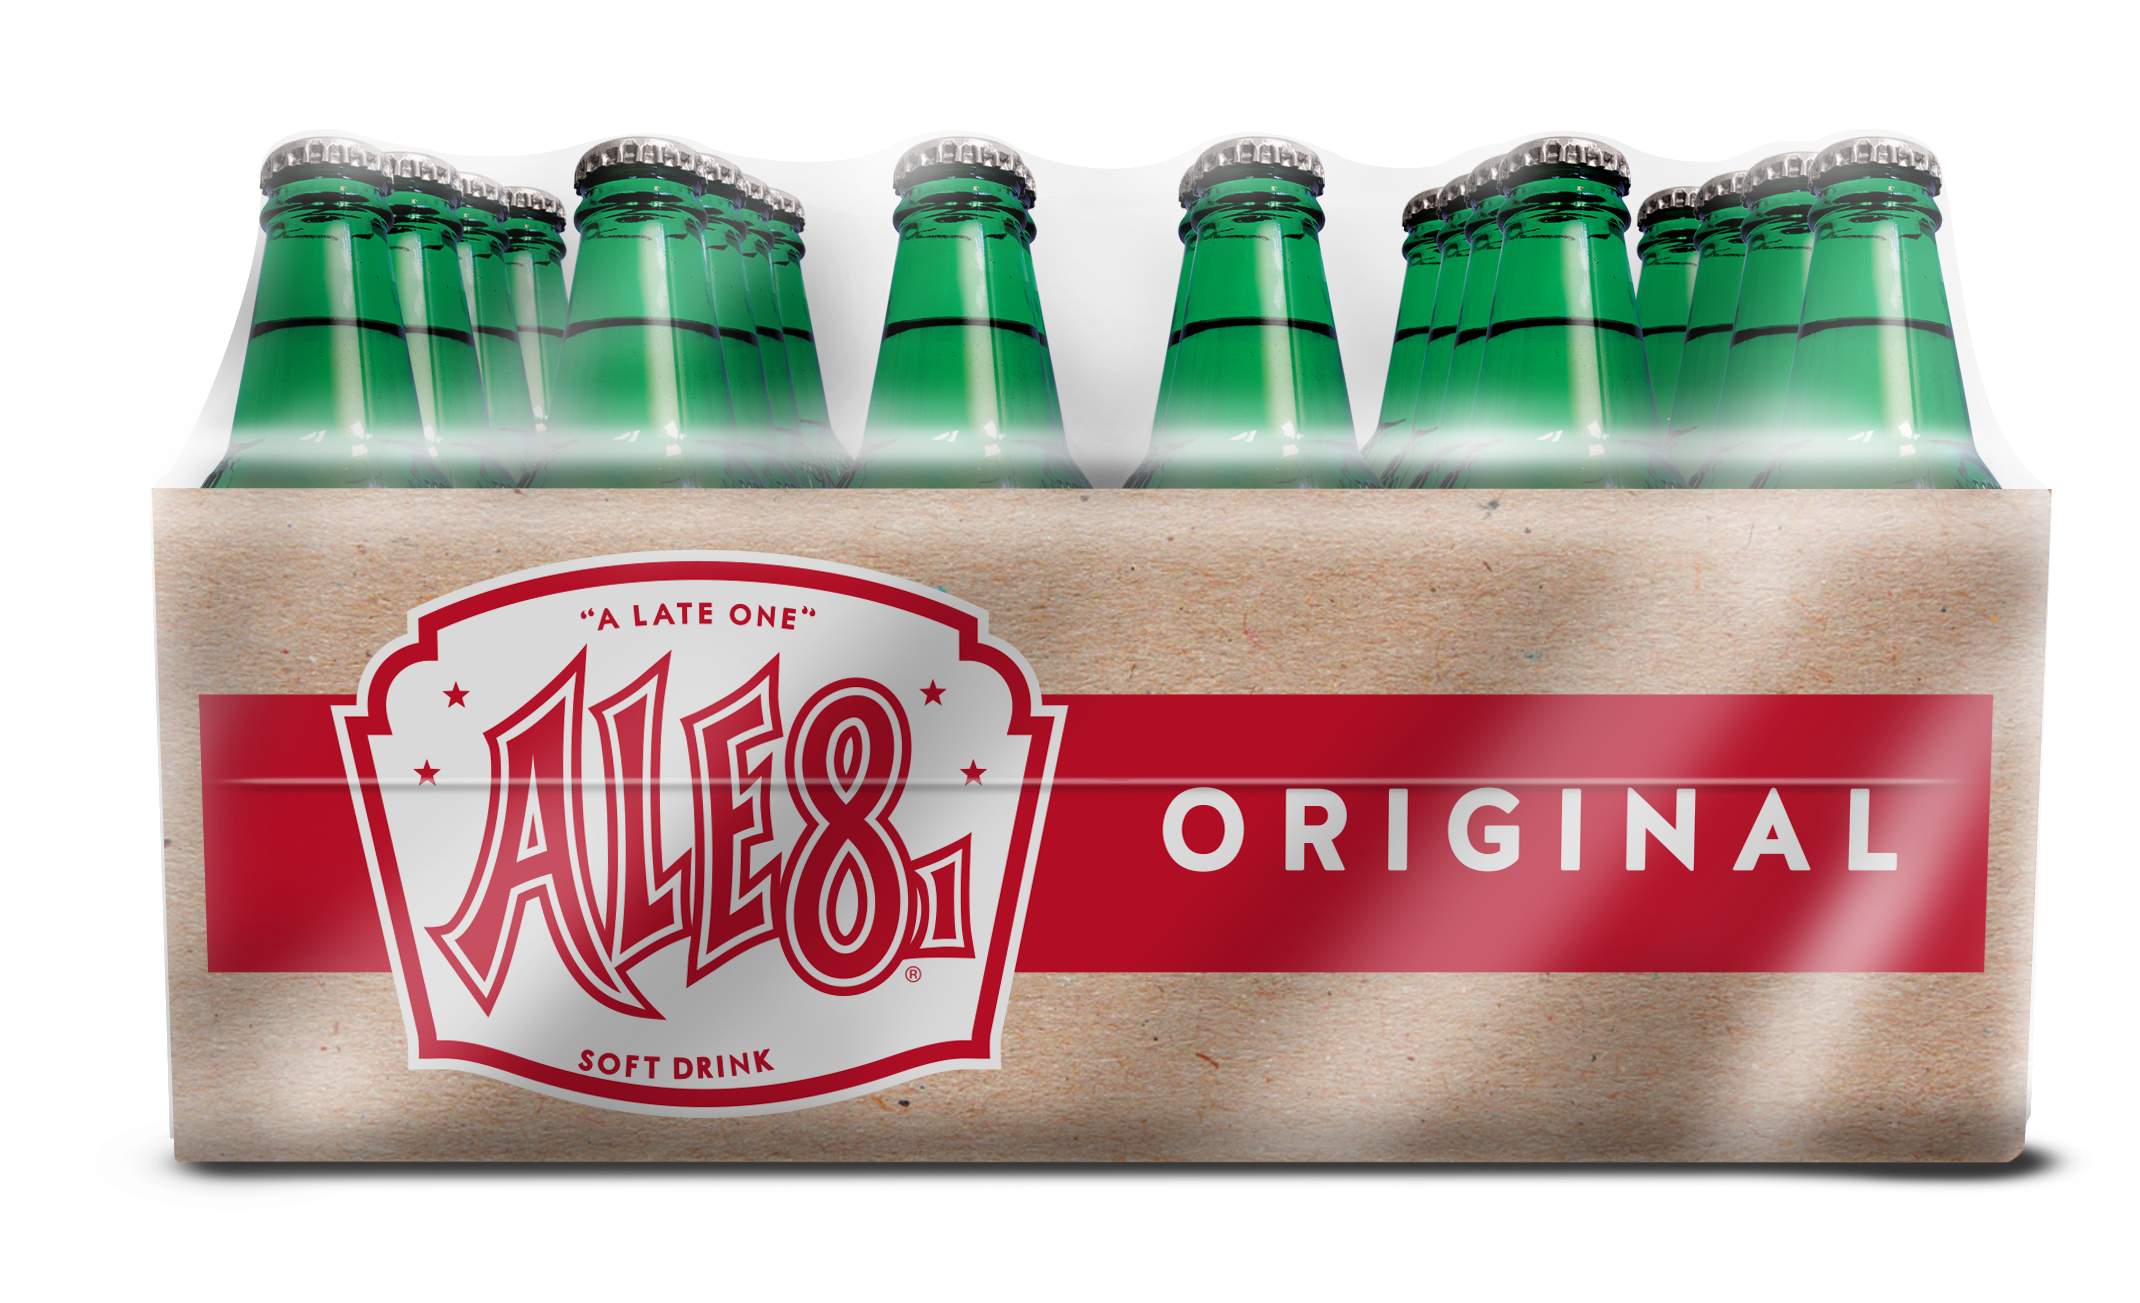 Ale-8-One Ginger Ale Green Glass Soda Pop, 12 Fl Oz, 24 Pack Bottles - image 1 of 2